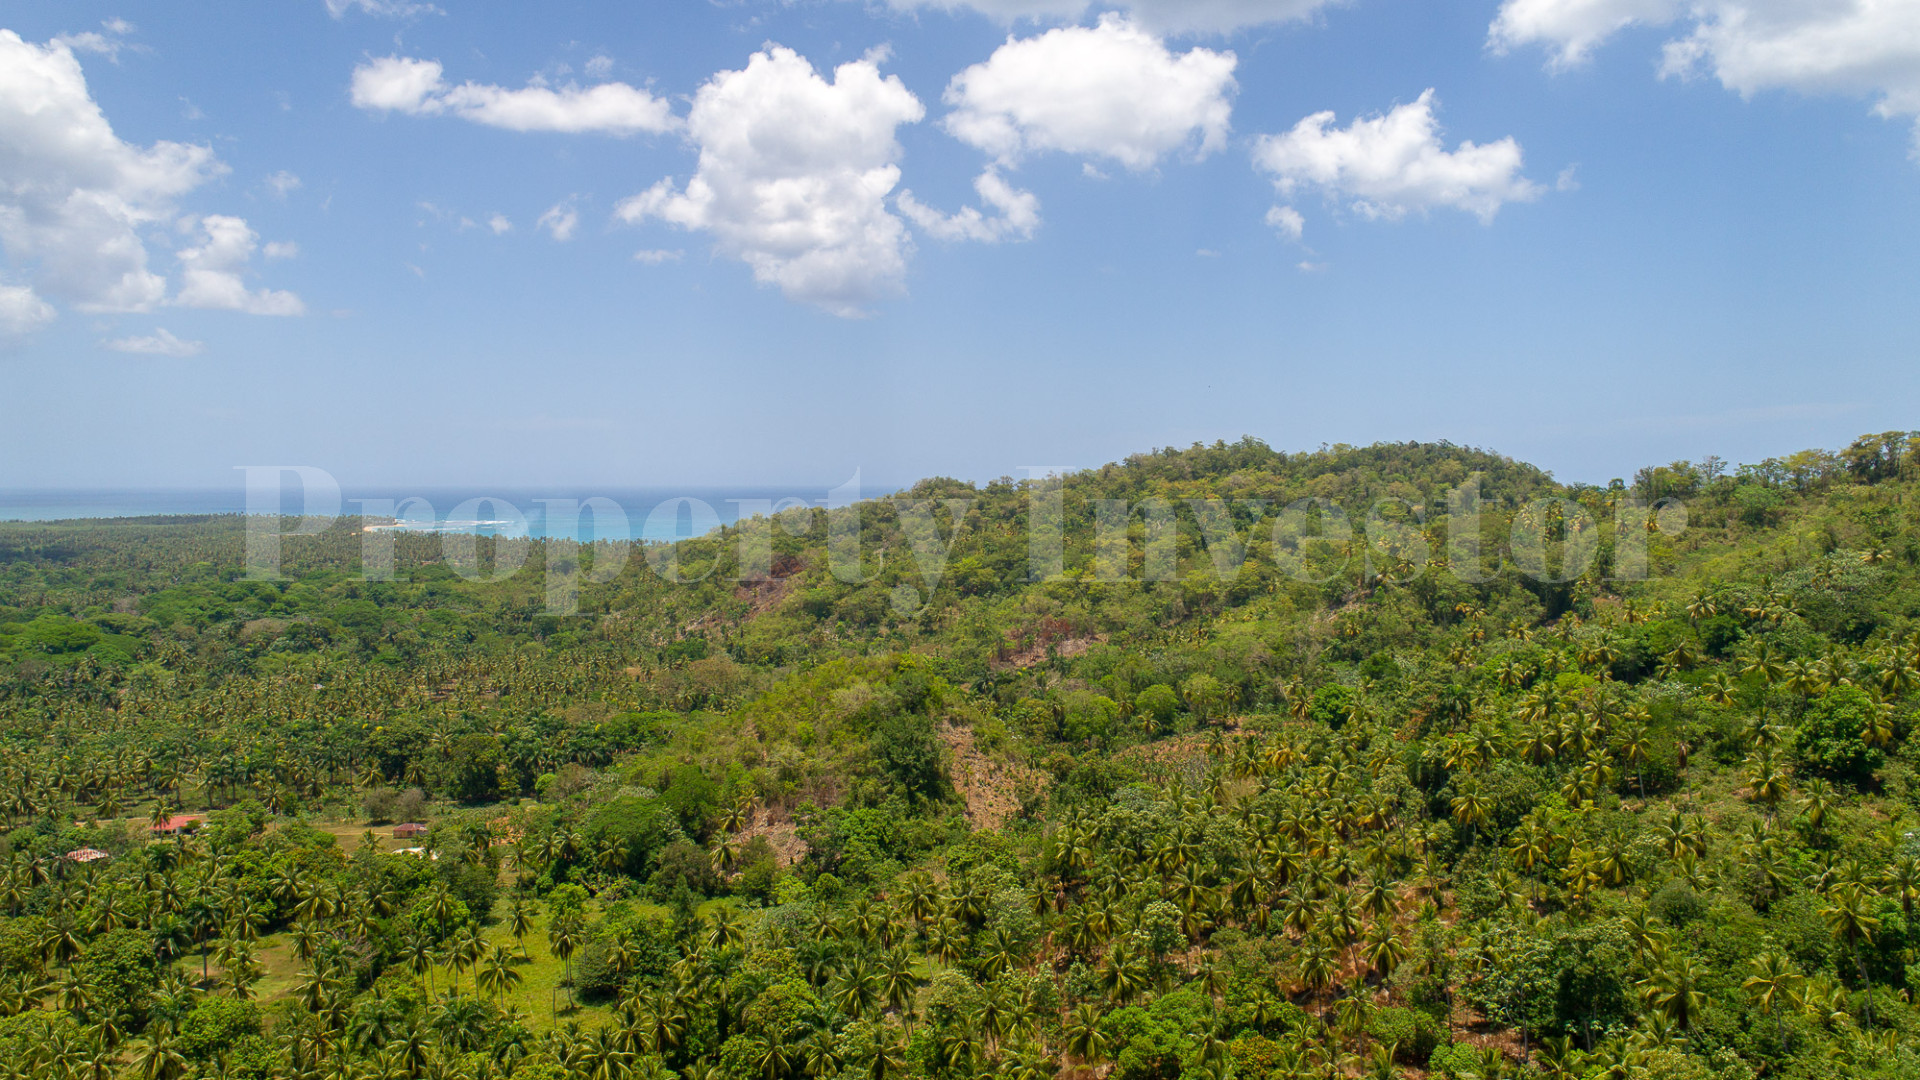 Участок земли приблизительно 200 гектаров под коммерческое или туристическое развитие рядом с Лас-Терренас, Доминиканская Республика